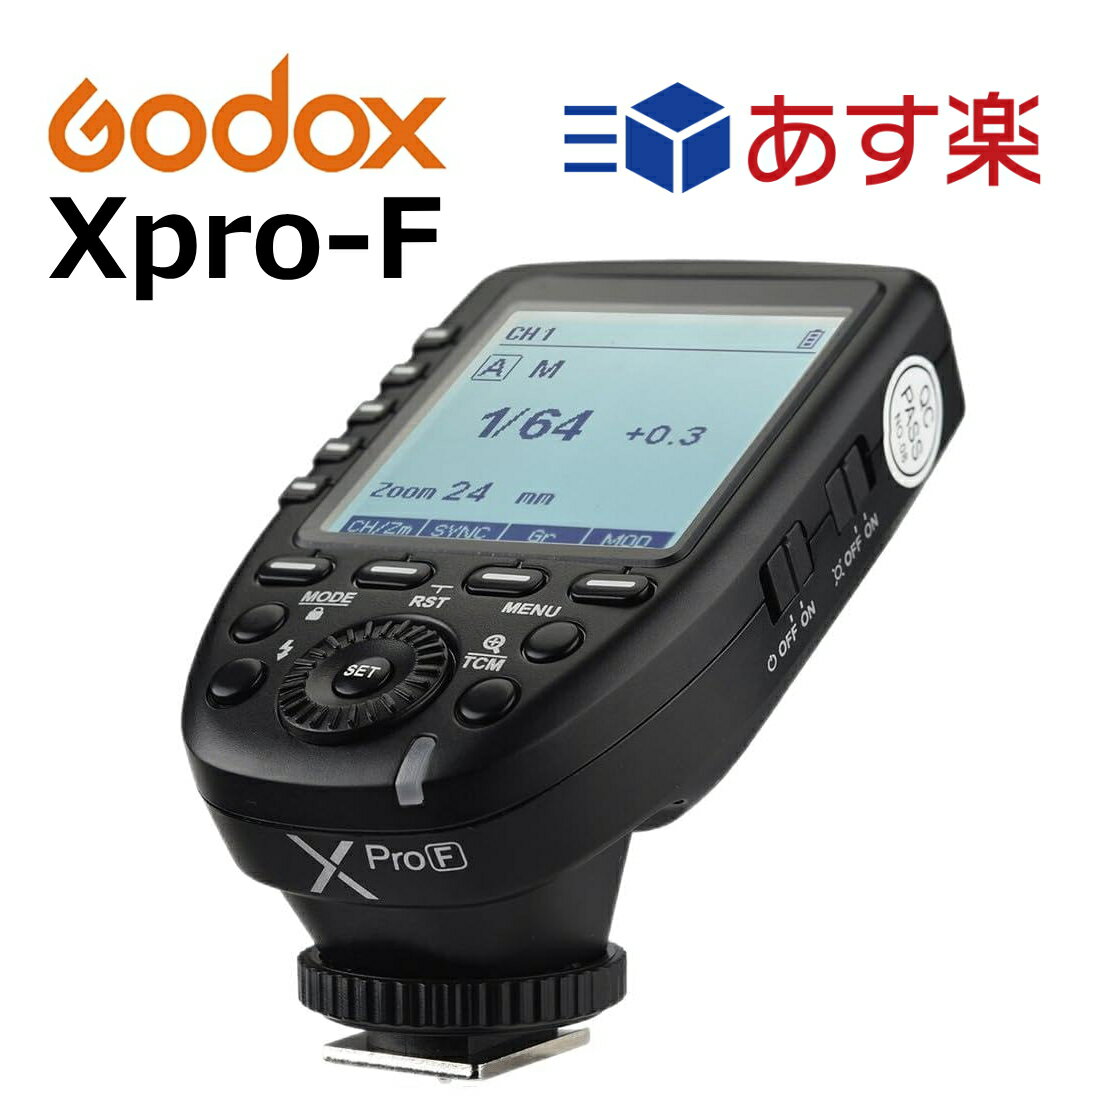 日本正規代理店 Godox Xpro-F 送信機 TTL 2.4Gワイヤレスフラッシュトリガー 高速同期 1/8000s 大画面 LCD スクリーントランスミッタ 互換性 富士フィルム Fuji カメラ用